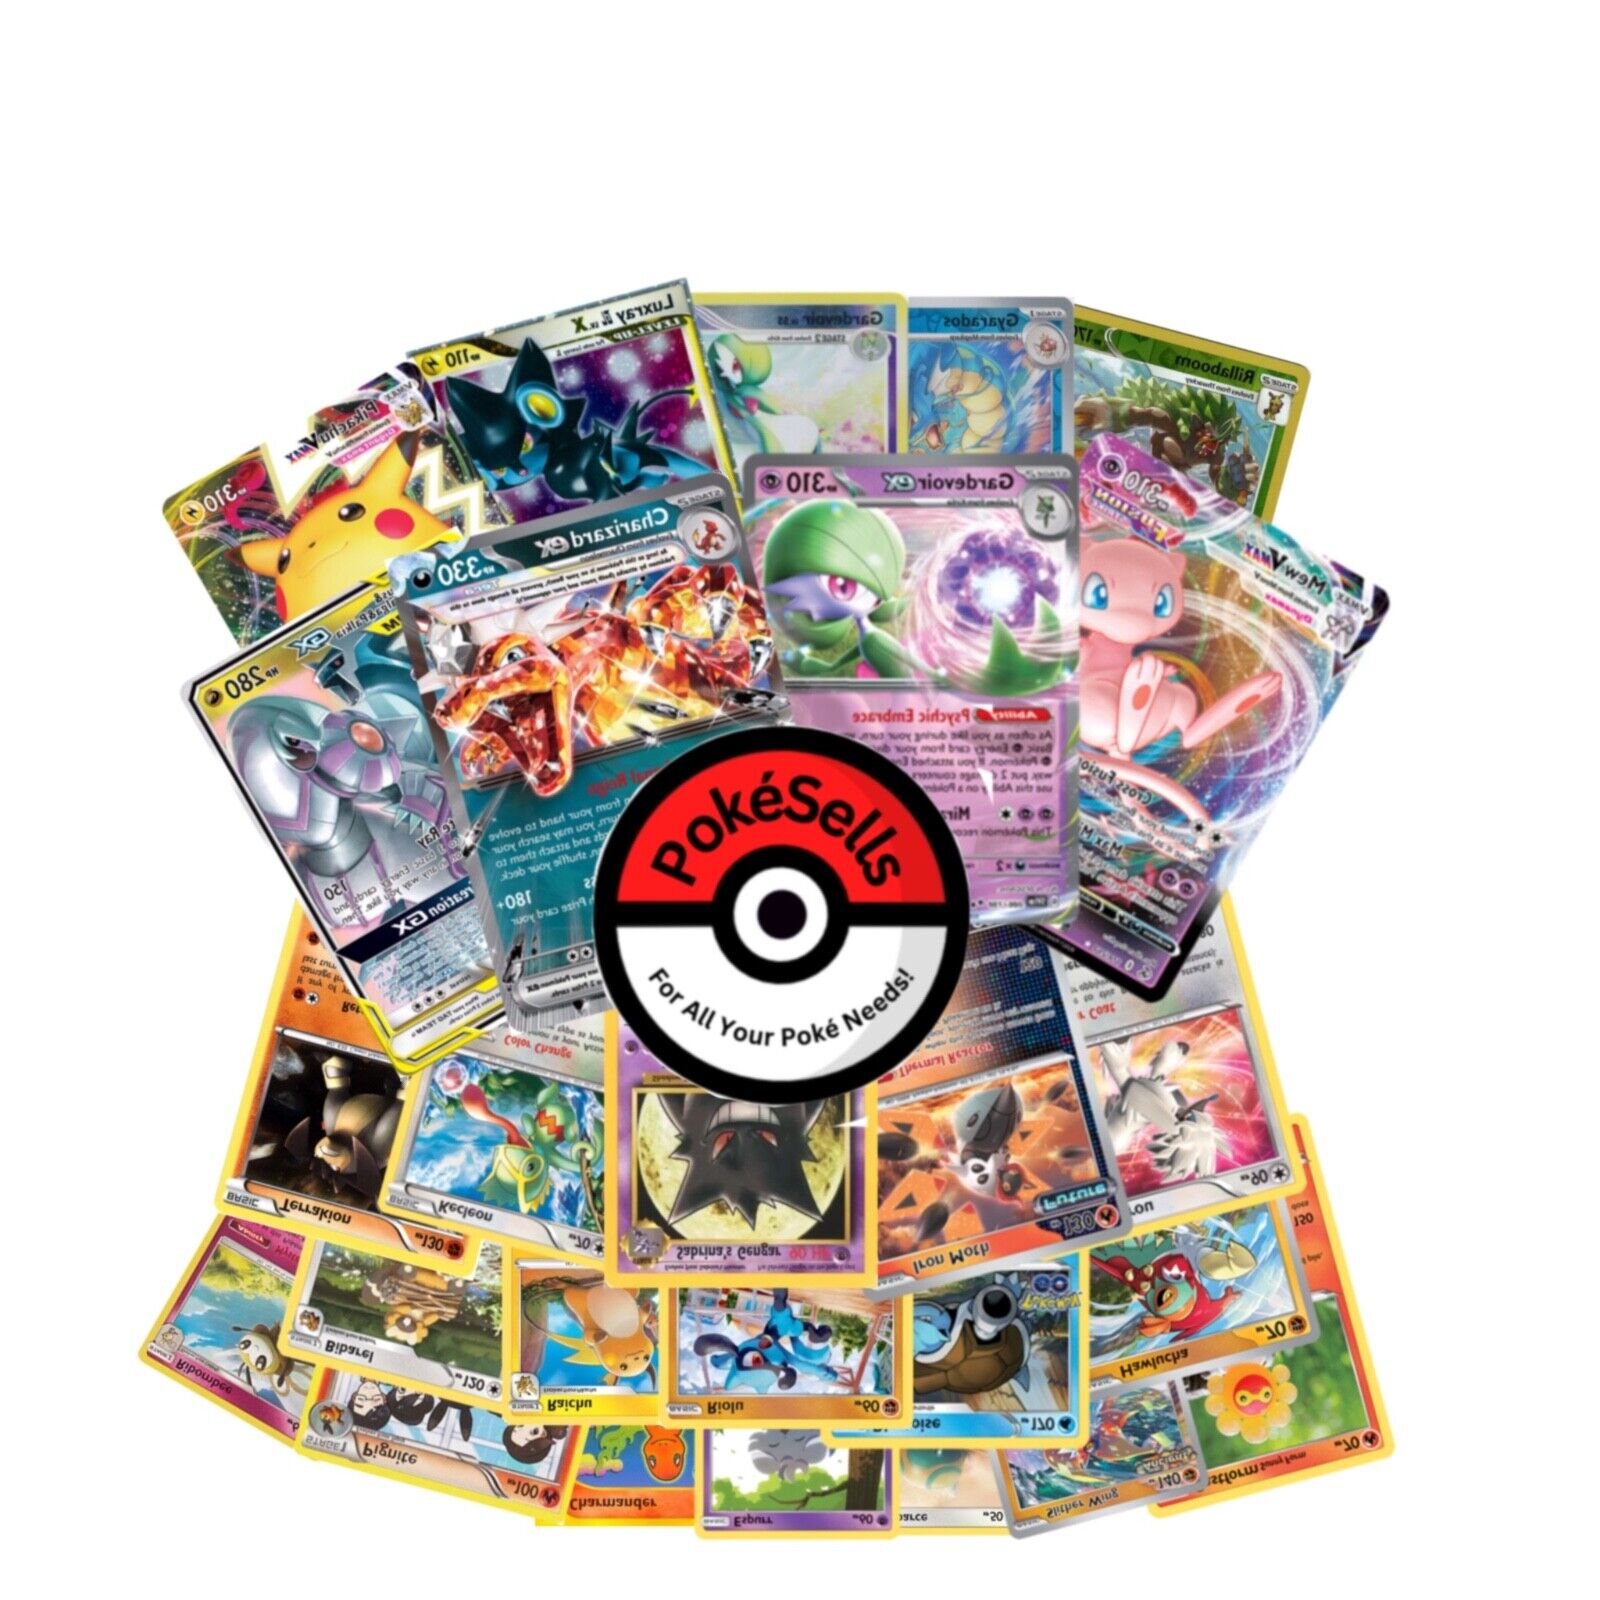 Pokémon Random Lot: 100+ Cards From Any Era - 1 Ultra Rare, 15 Rare, 85 Uncommon